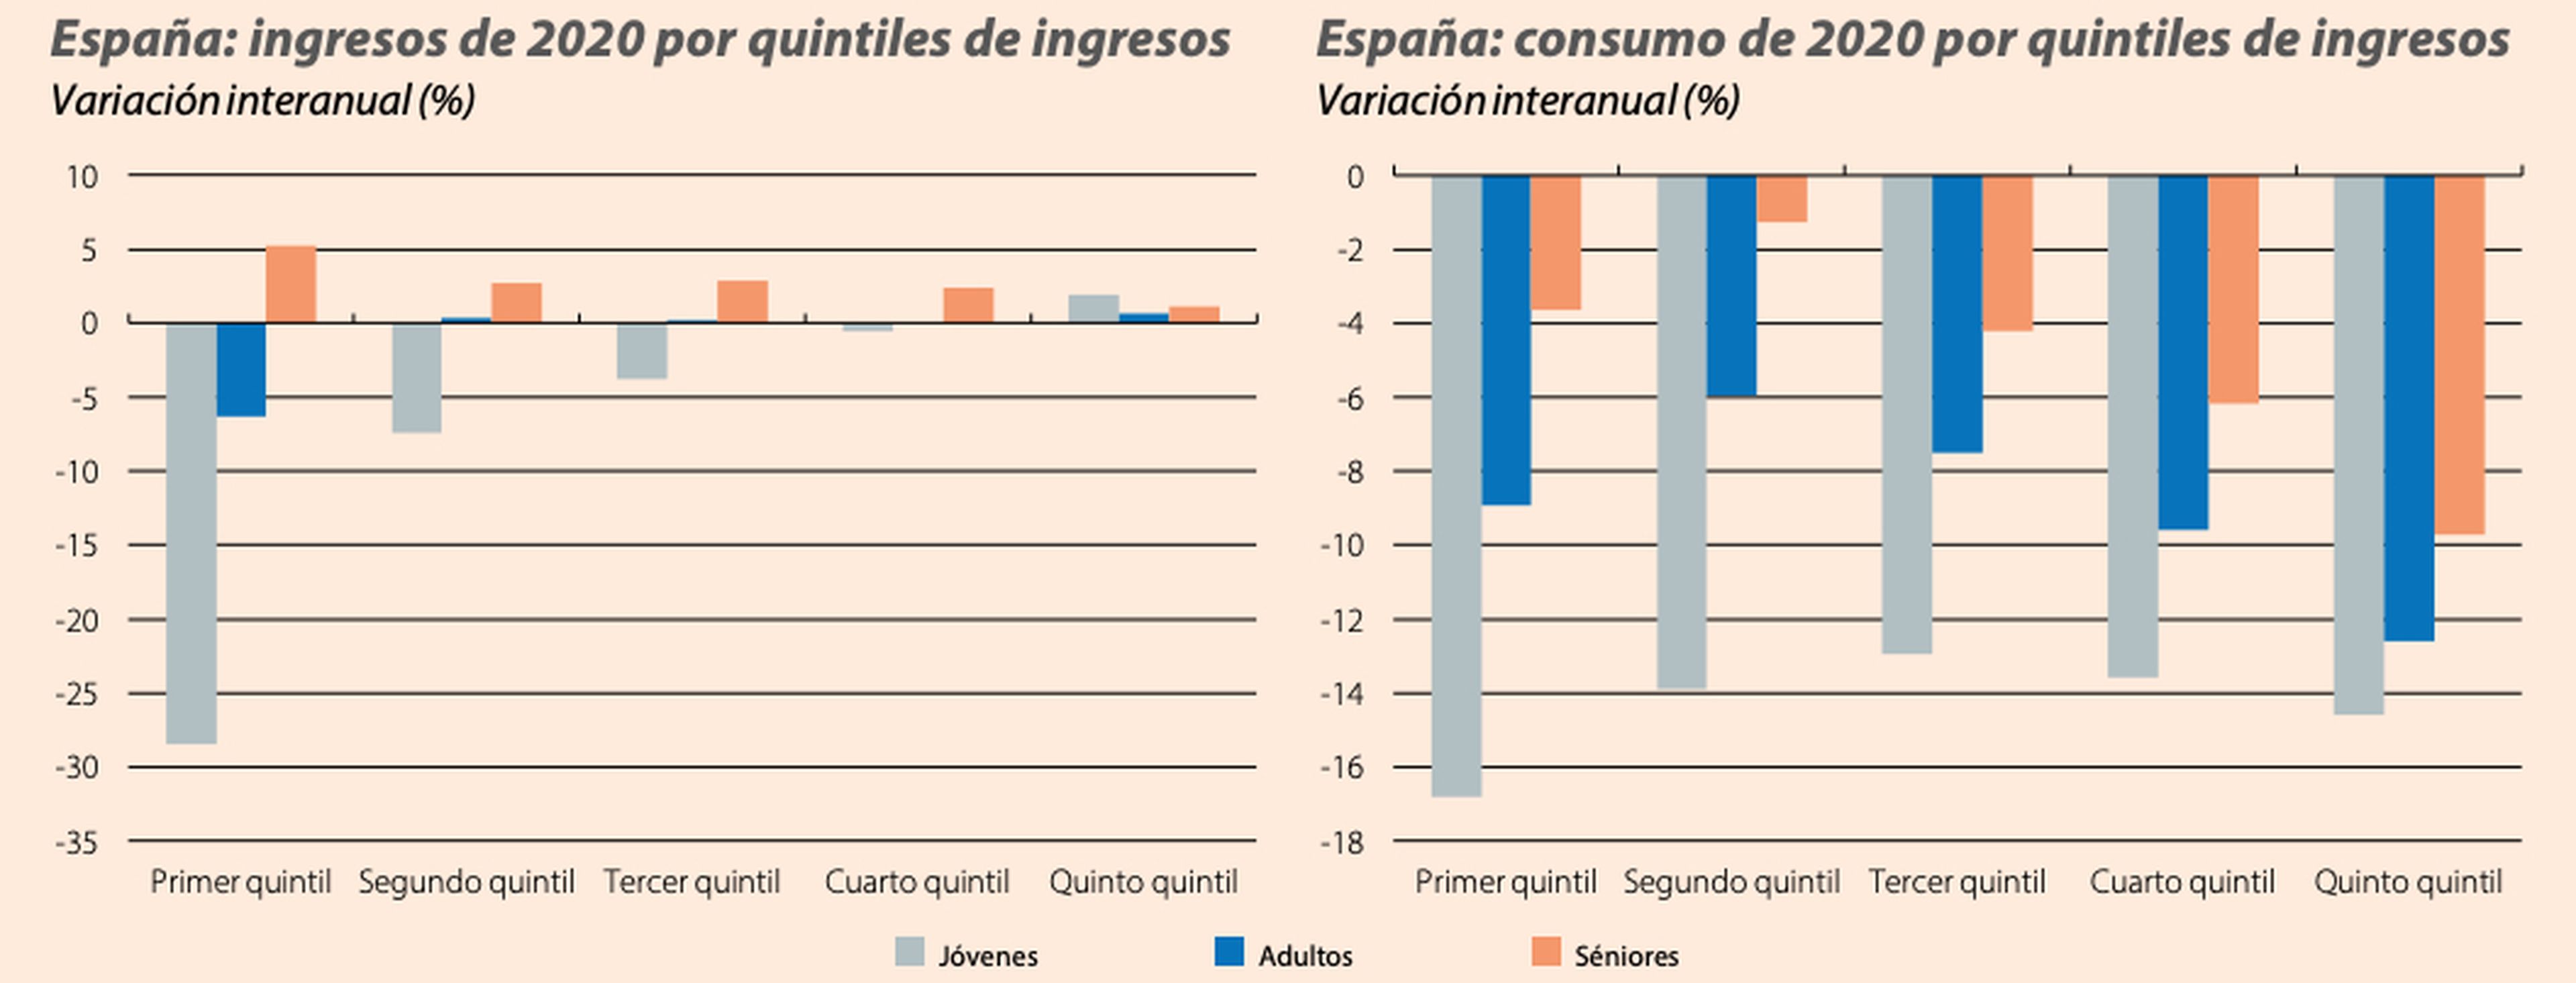 Evolución de ingresos y consumo de jóvenes, adultos y séniores por quintiles de ingresos